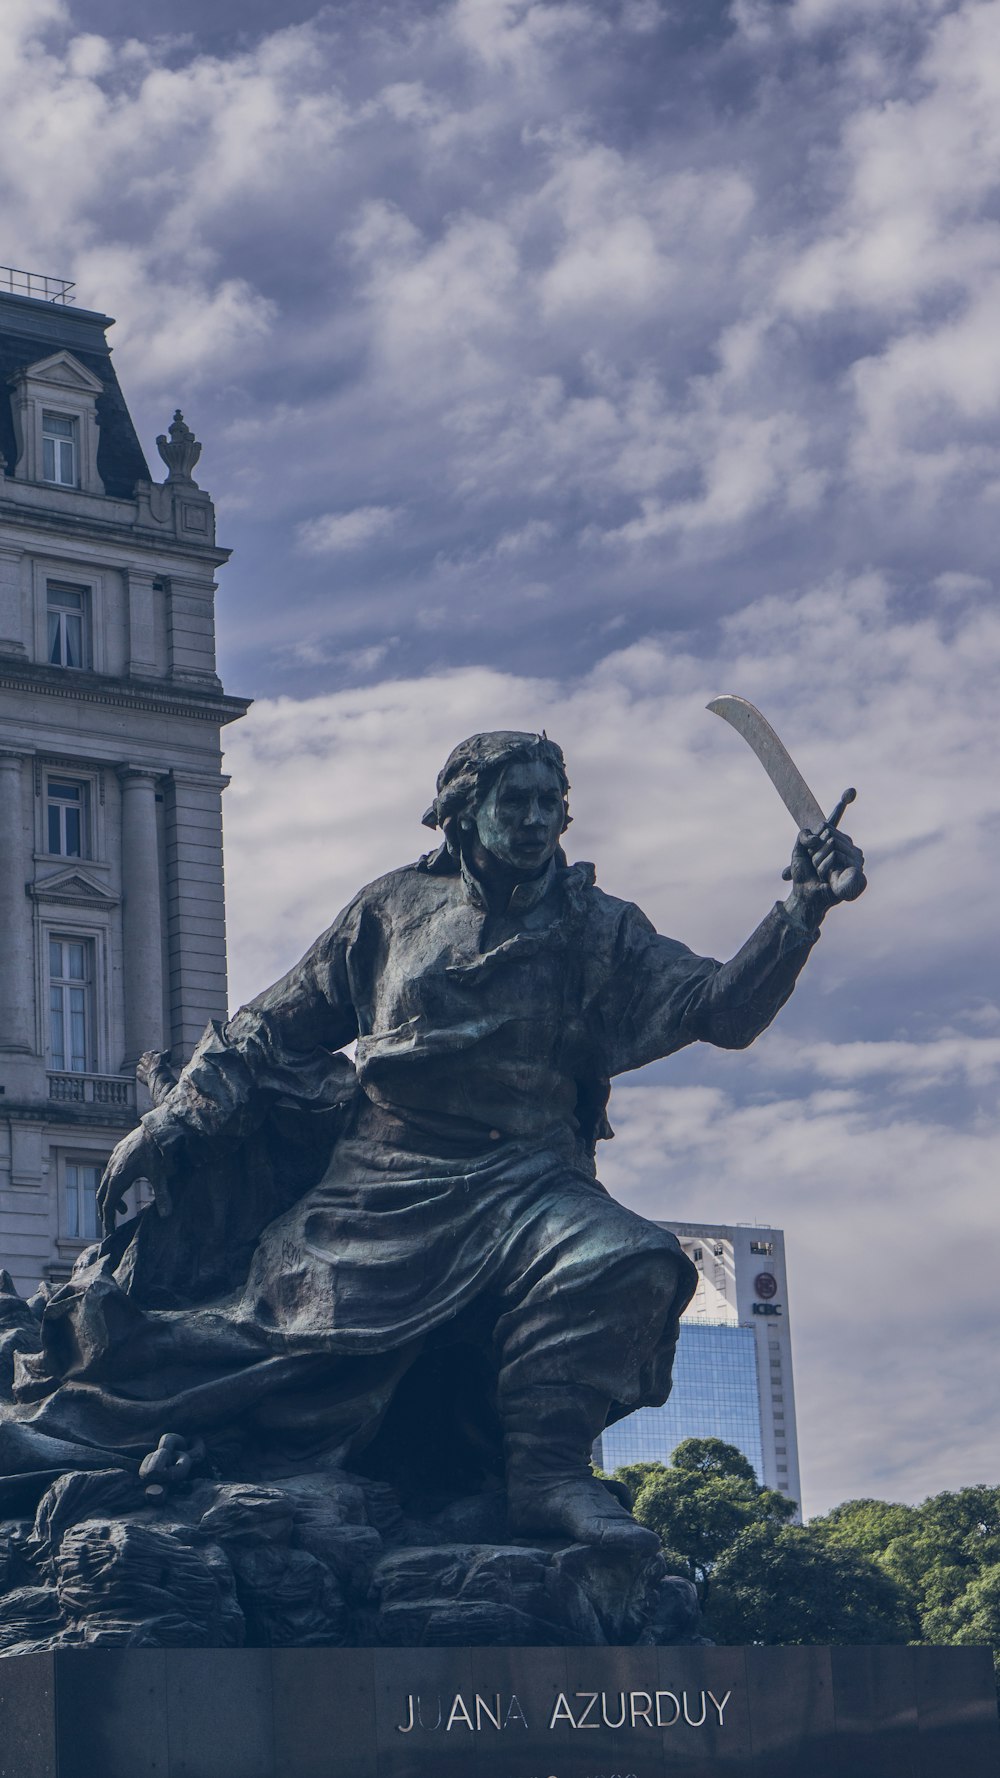 Una estatua de un hombre sosteniendo una espada frente a un edificio